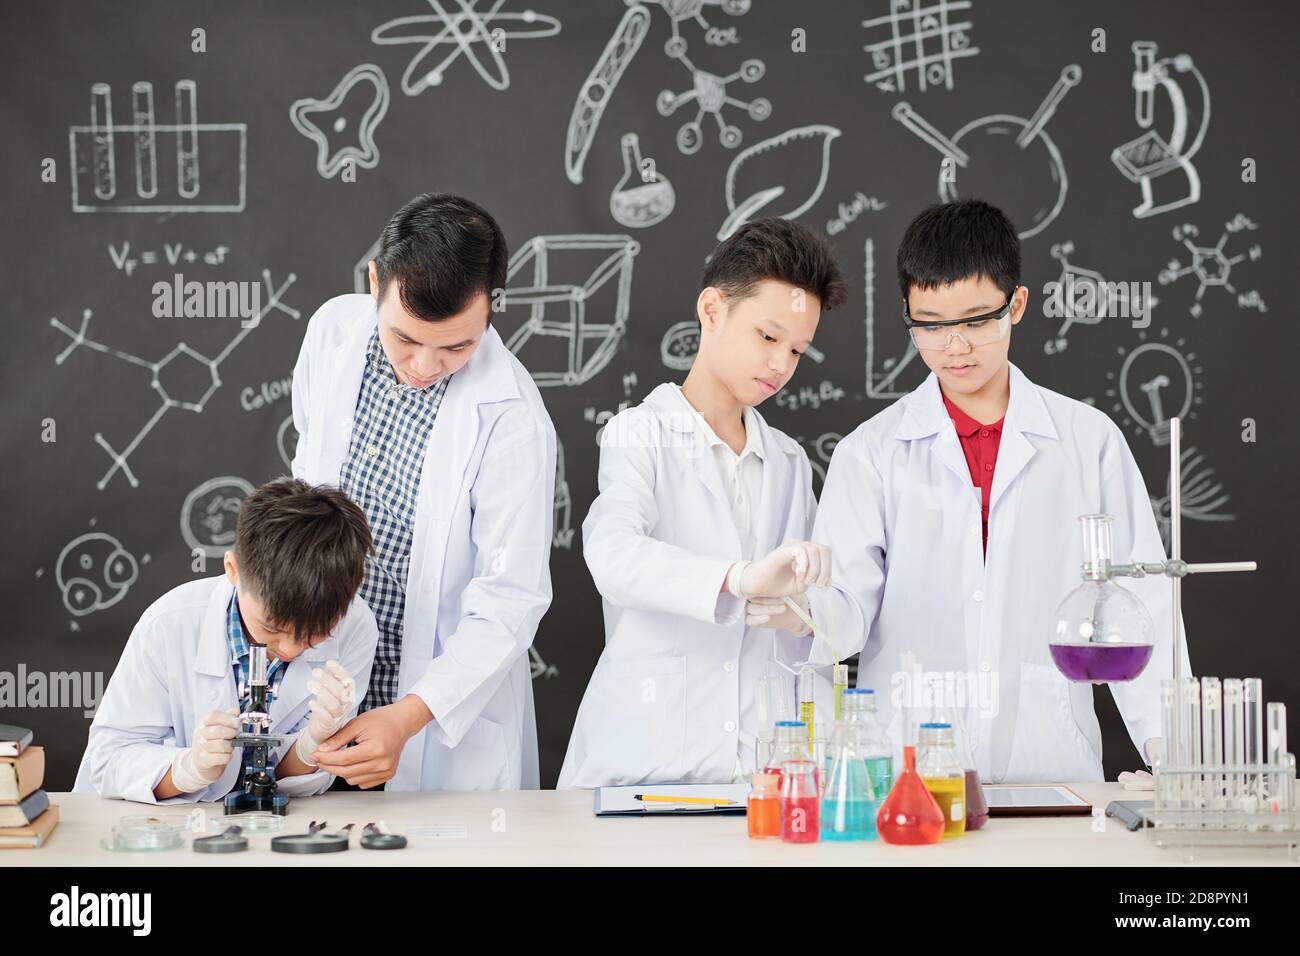 Опыт и наука в образовании. Изучение химии в школе. Химия это наука. Учеба химия. Образование химия.